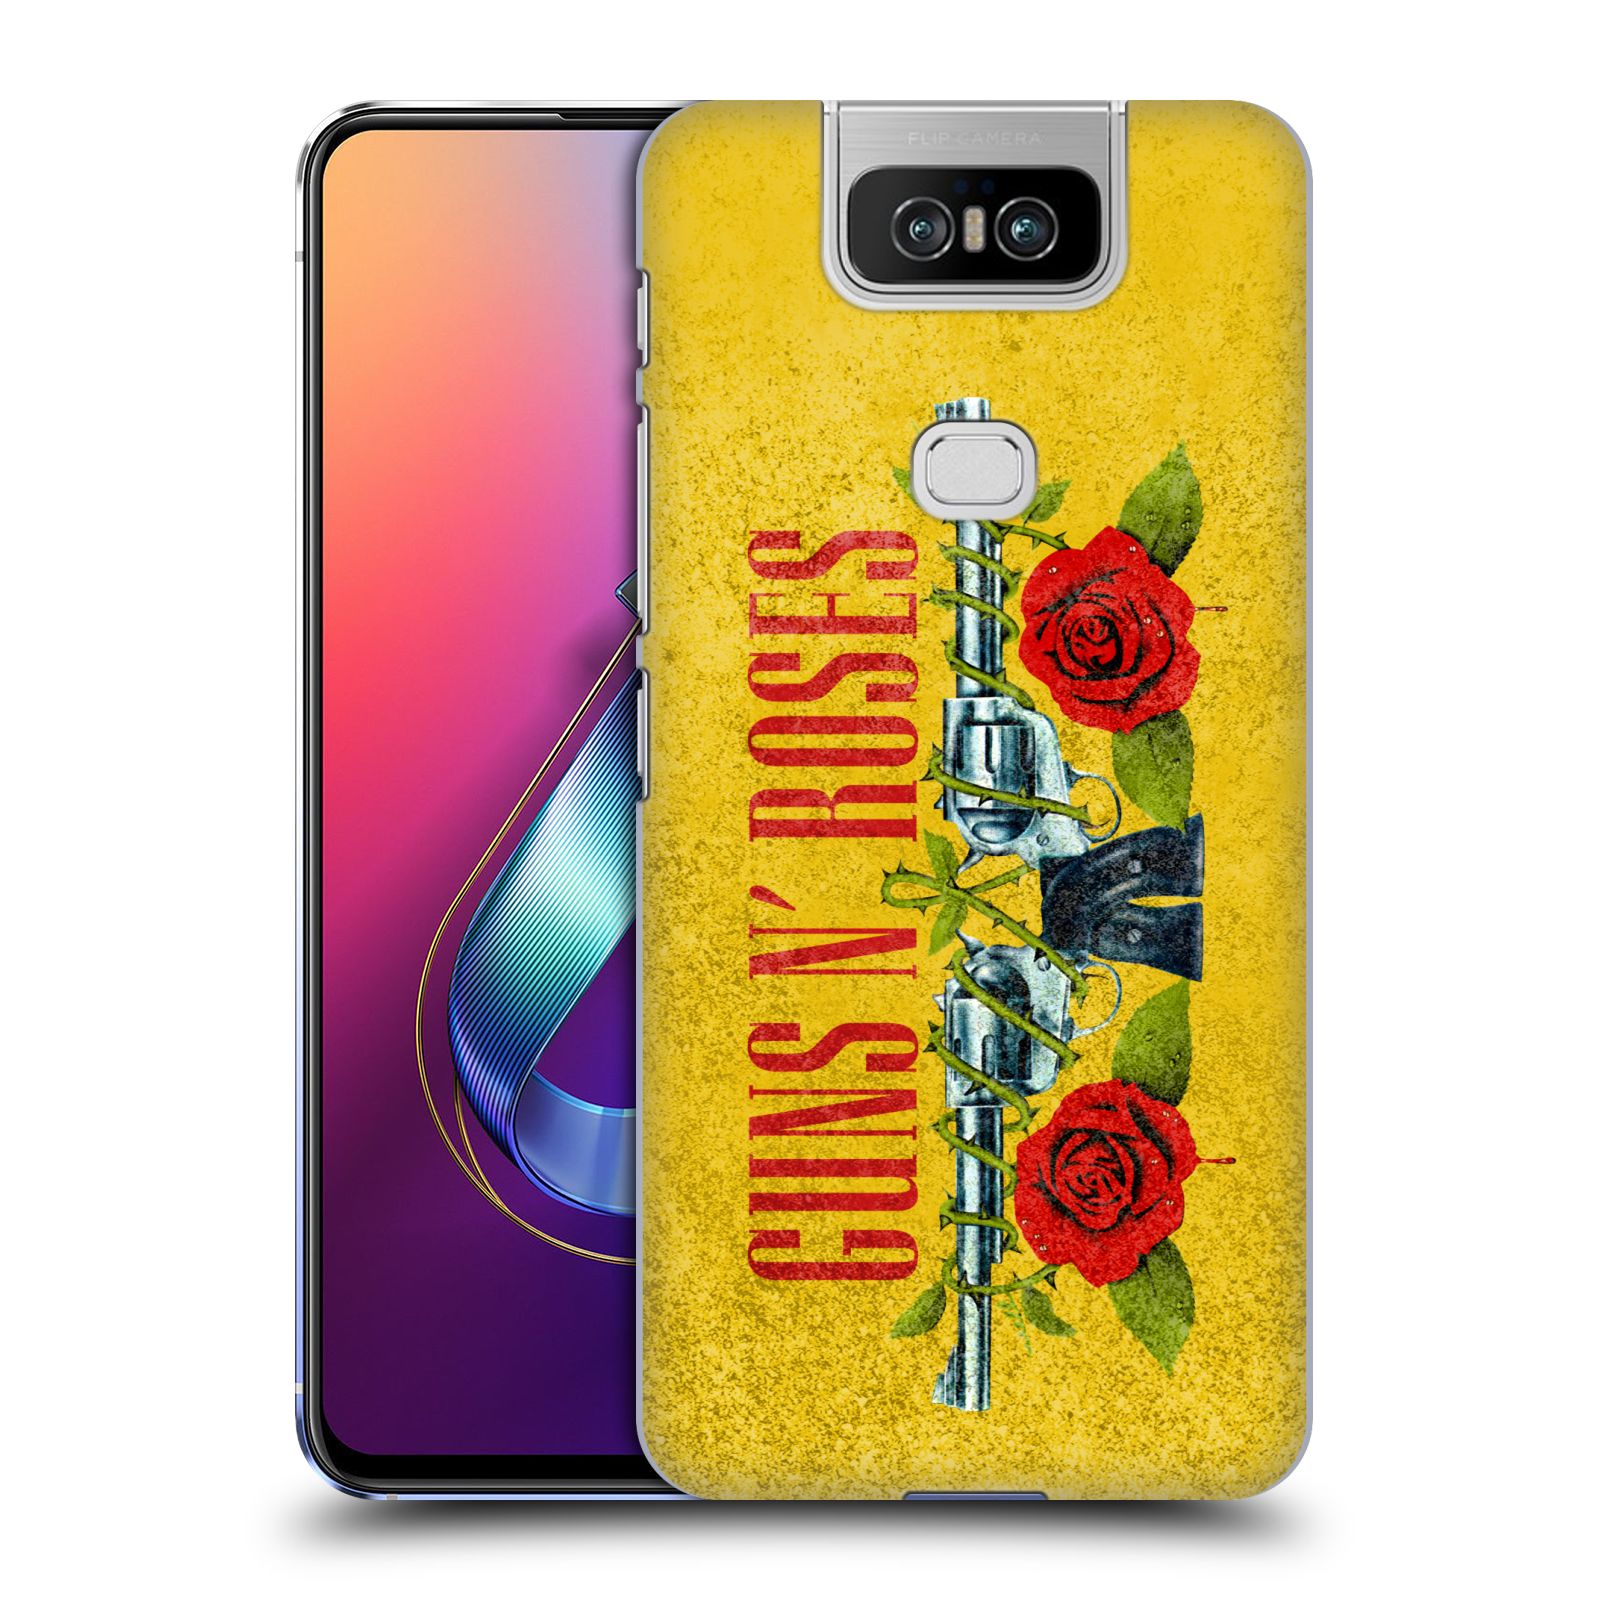 Pouzdro na mobil Asus Zenfone 6 ZS630KL - HEAD CASE - hudební skupina Guns N Roses pistole a růže žluté pozadí